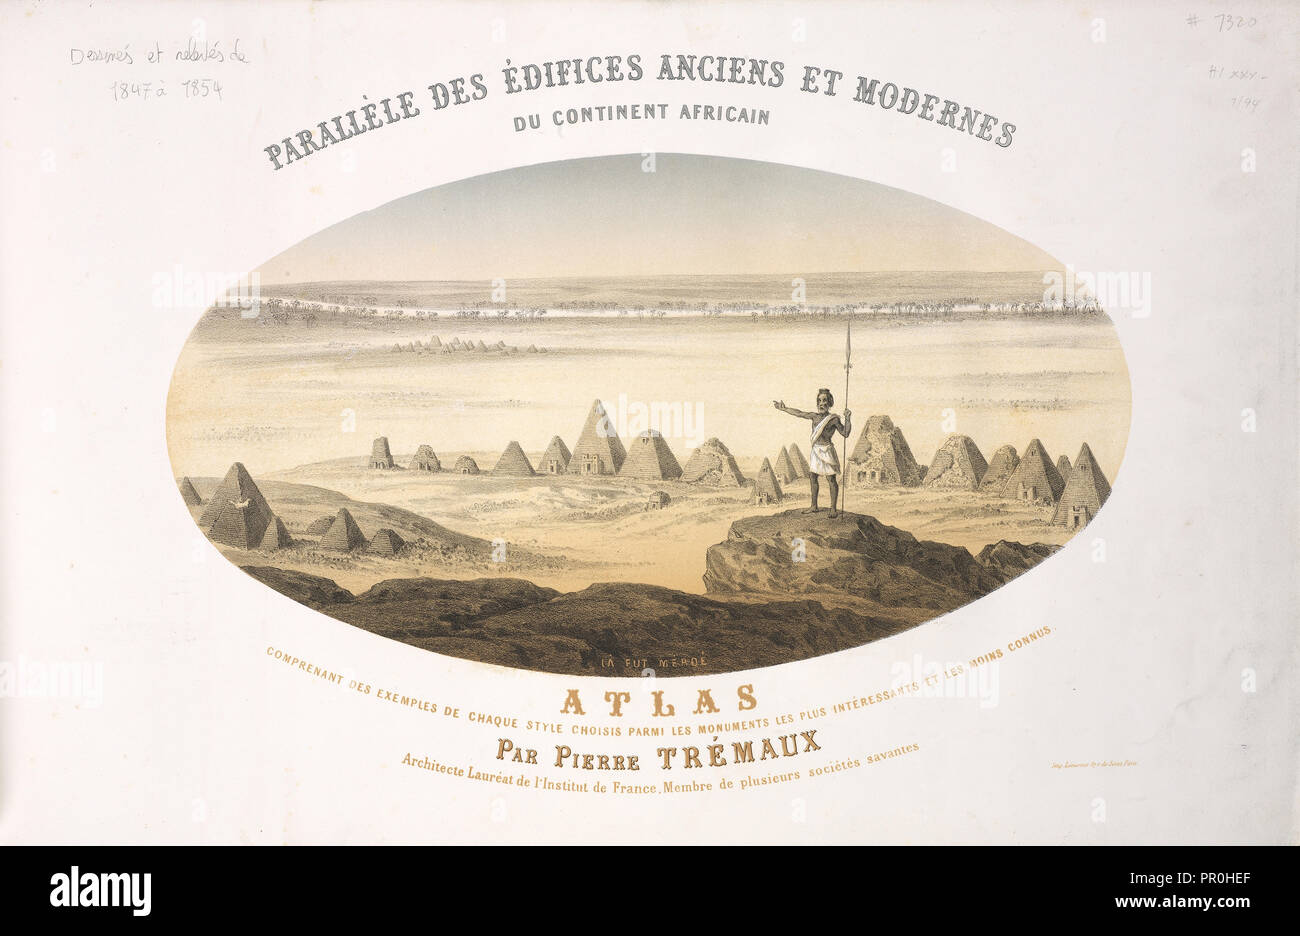 Frontispiece, Parallèles des édifices anciens et modernes du continent africain, dessinés et relevés de 1847 à 1854 Stock Photo